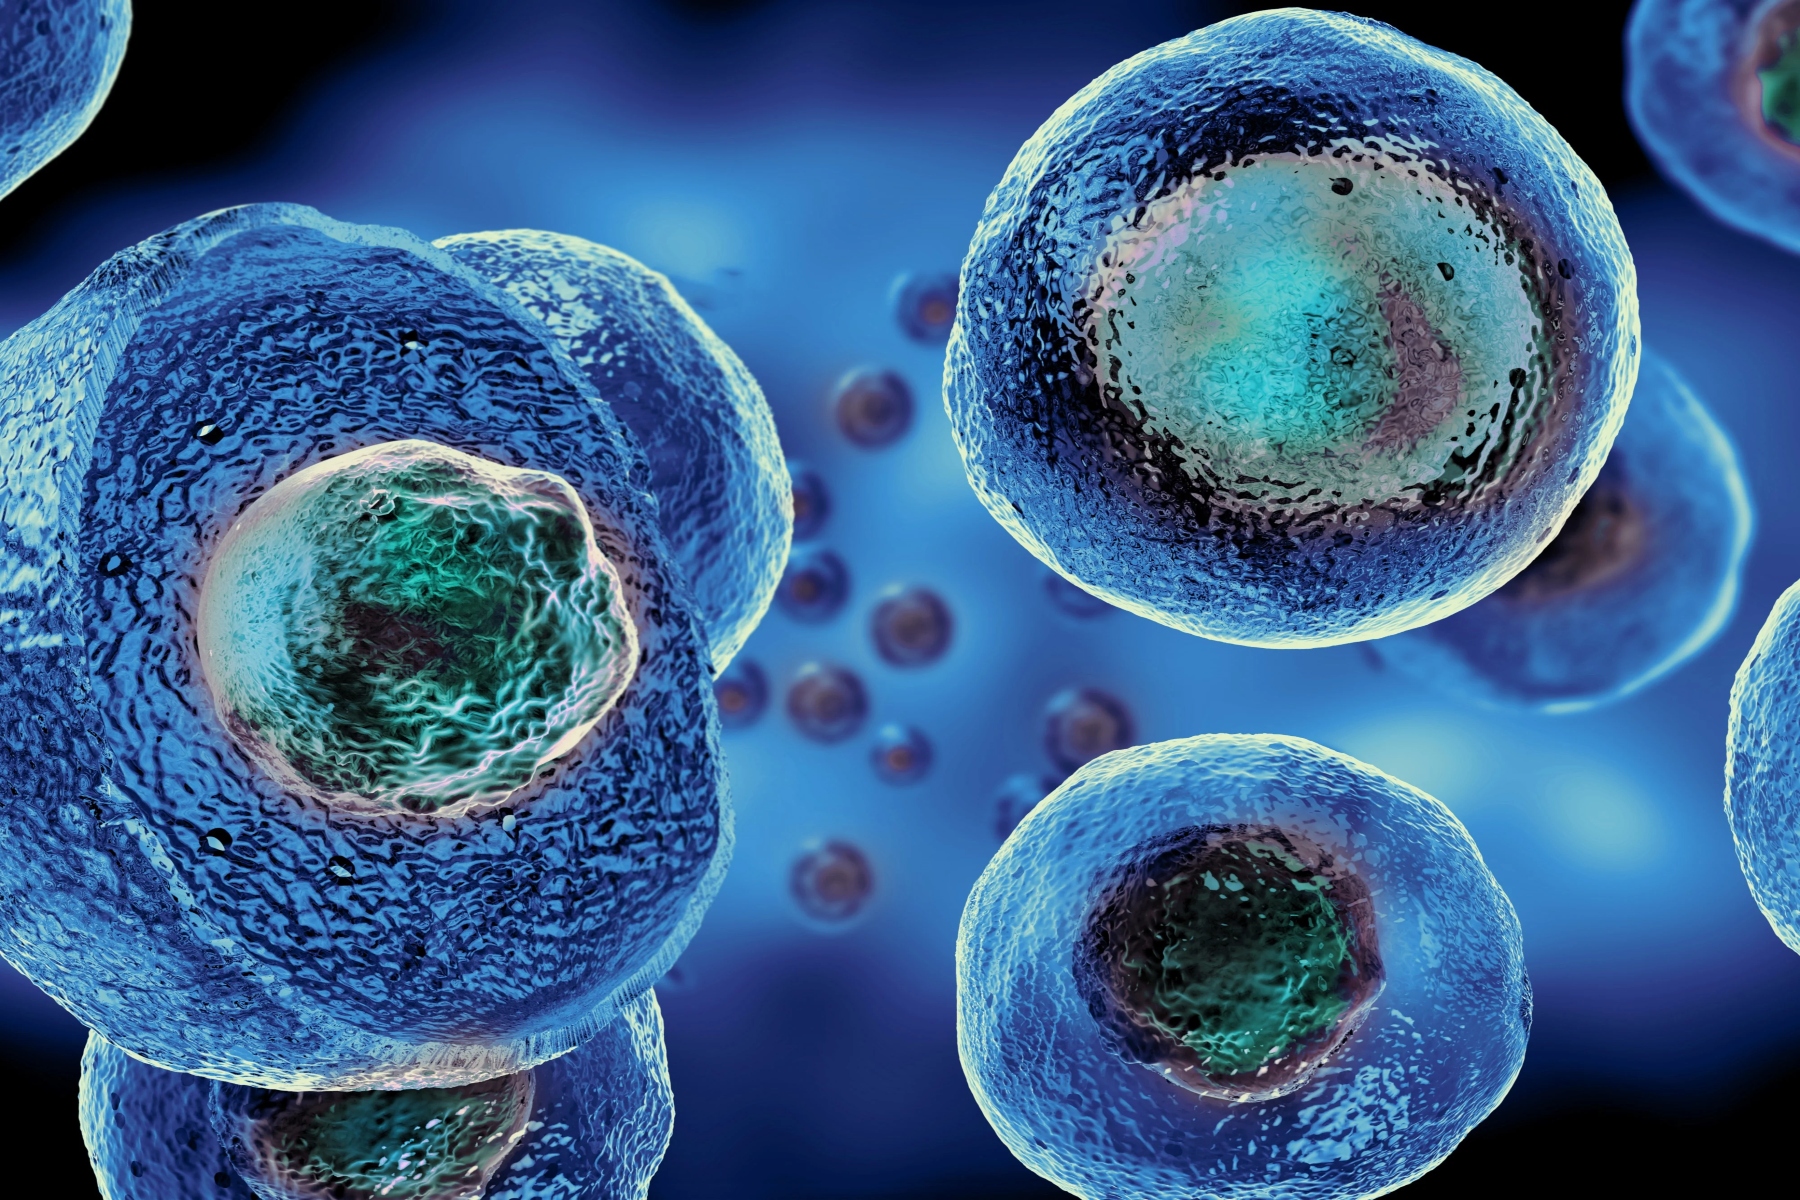 Μυϊκά βλαστοκύτταρα: Πρωτοποριακή τεχνολογία προωθεί νέες θεραπείες μυϊκής δυστροφίας